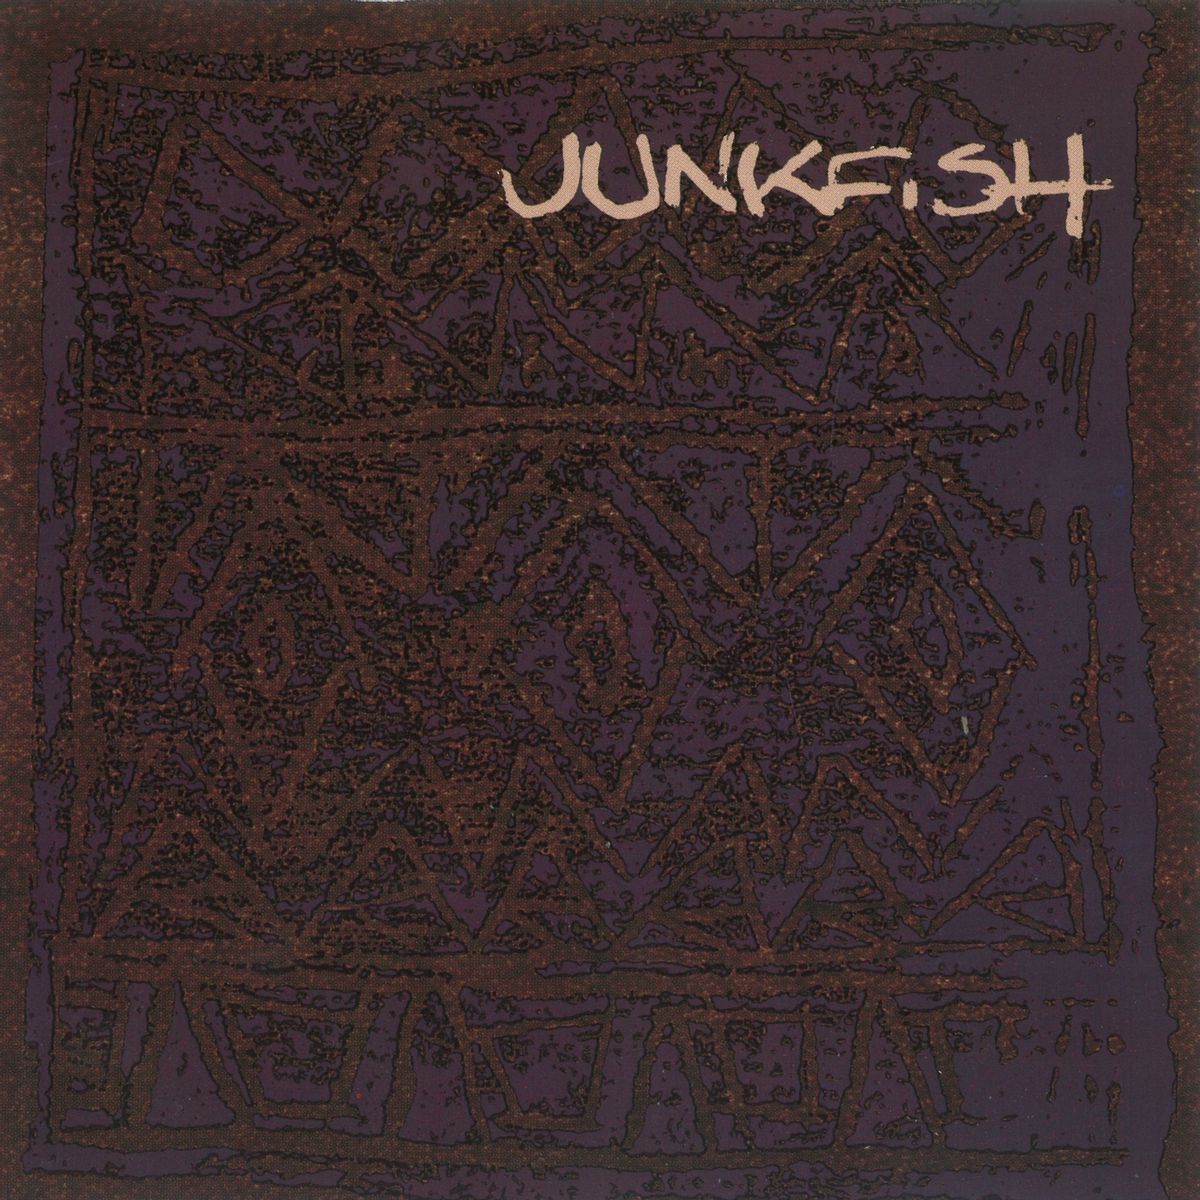 Junkfish - 'Junkfish'